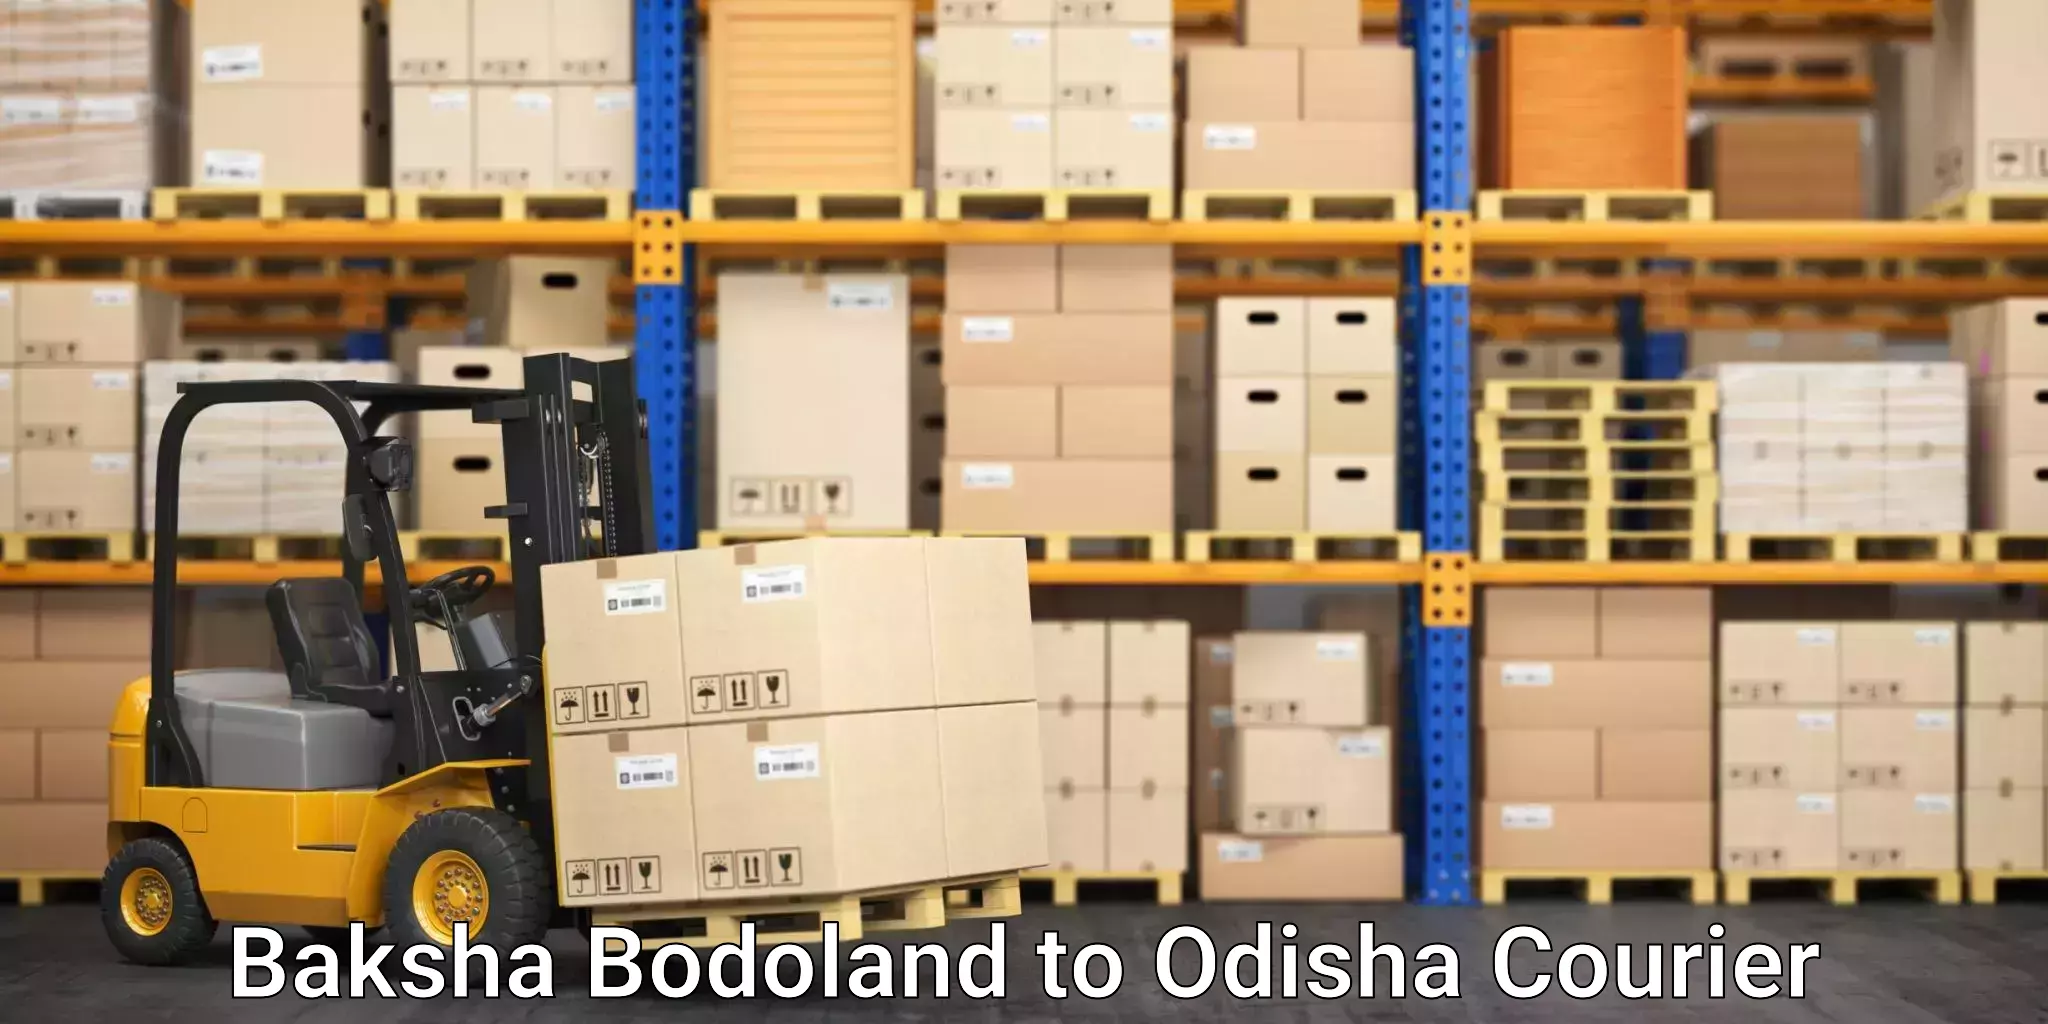 Express logistics providers Baksha Bodoland to Rairangpur